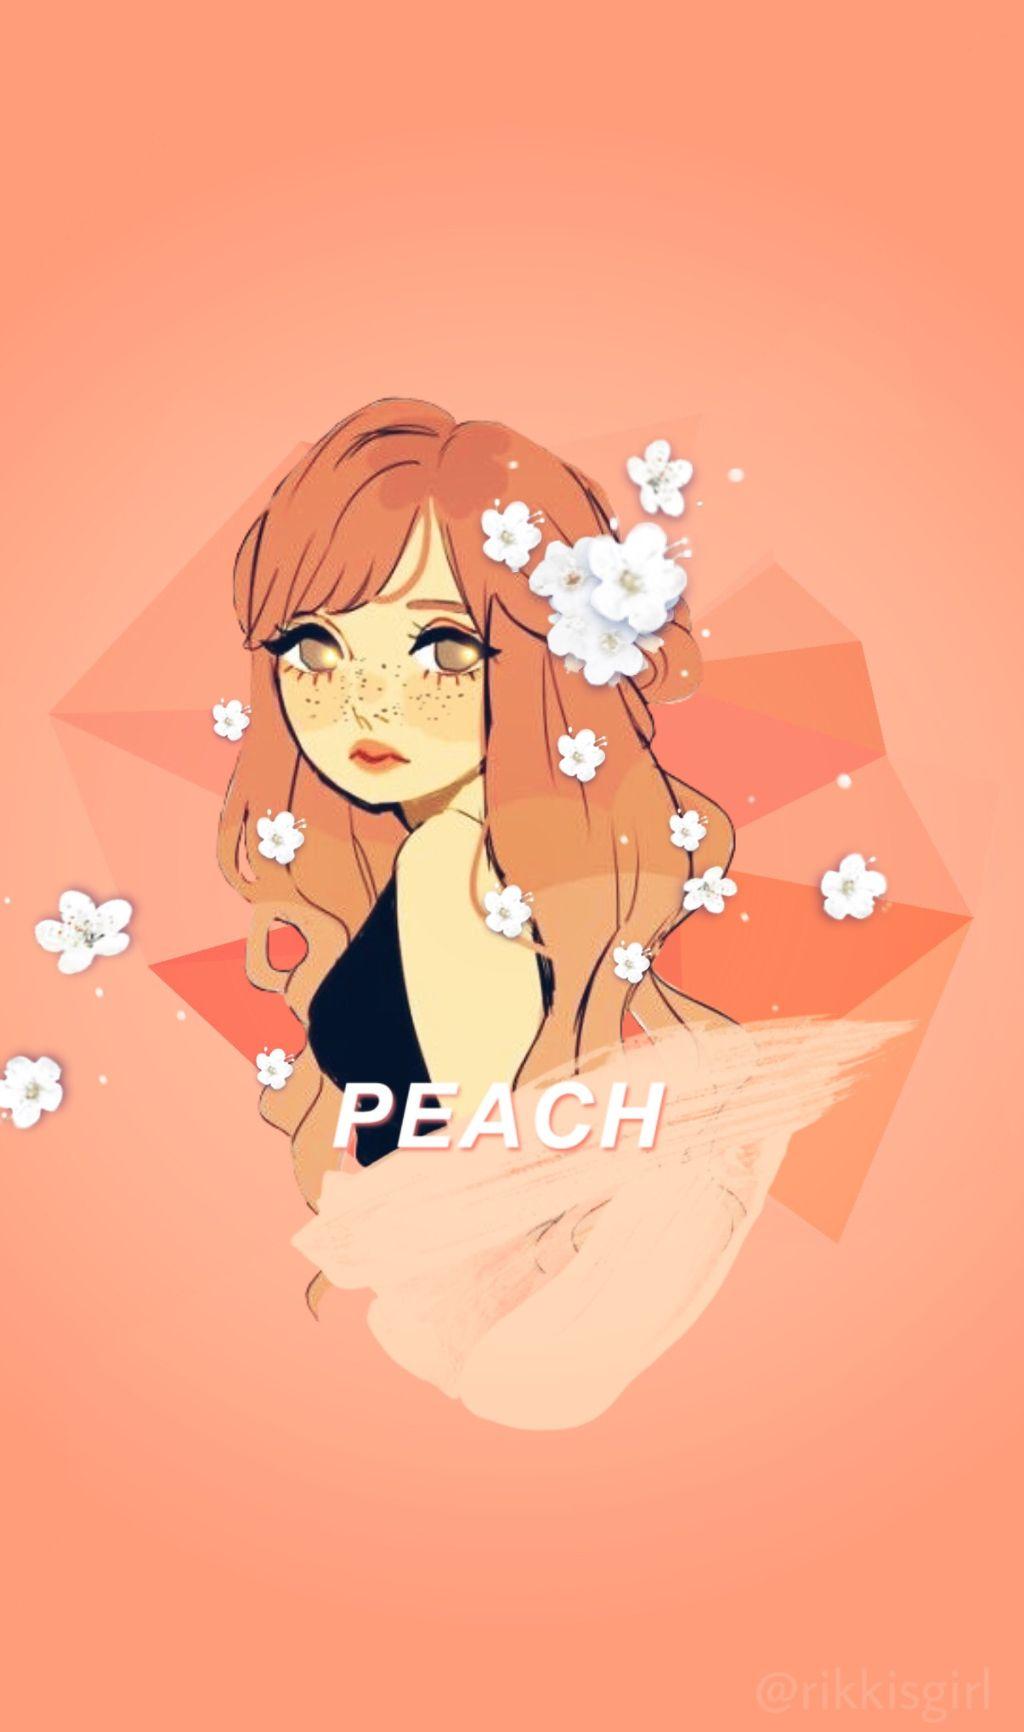 freetoedit peach peachy girl cutegirl wallpaper backgro